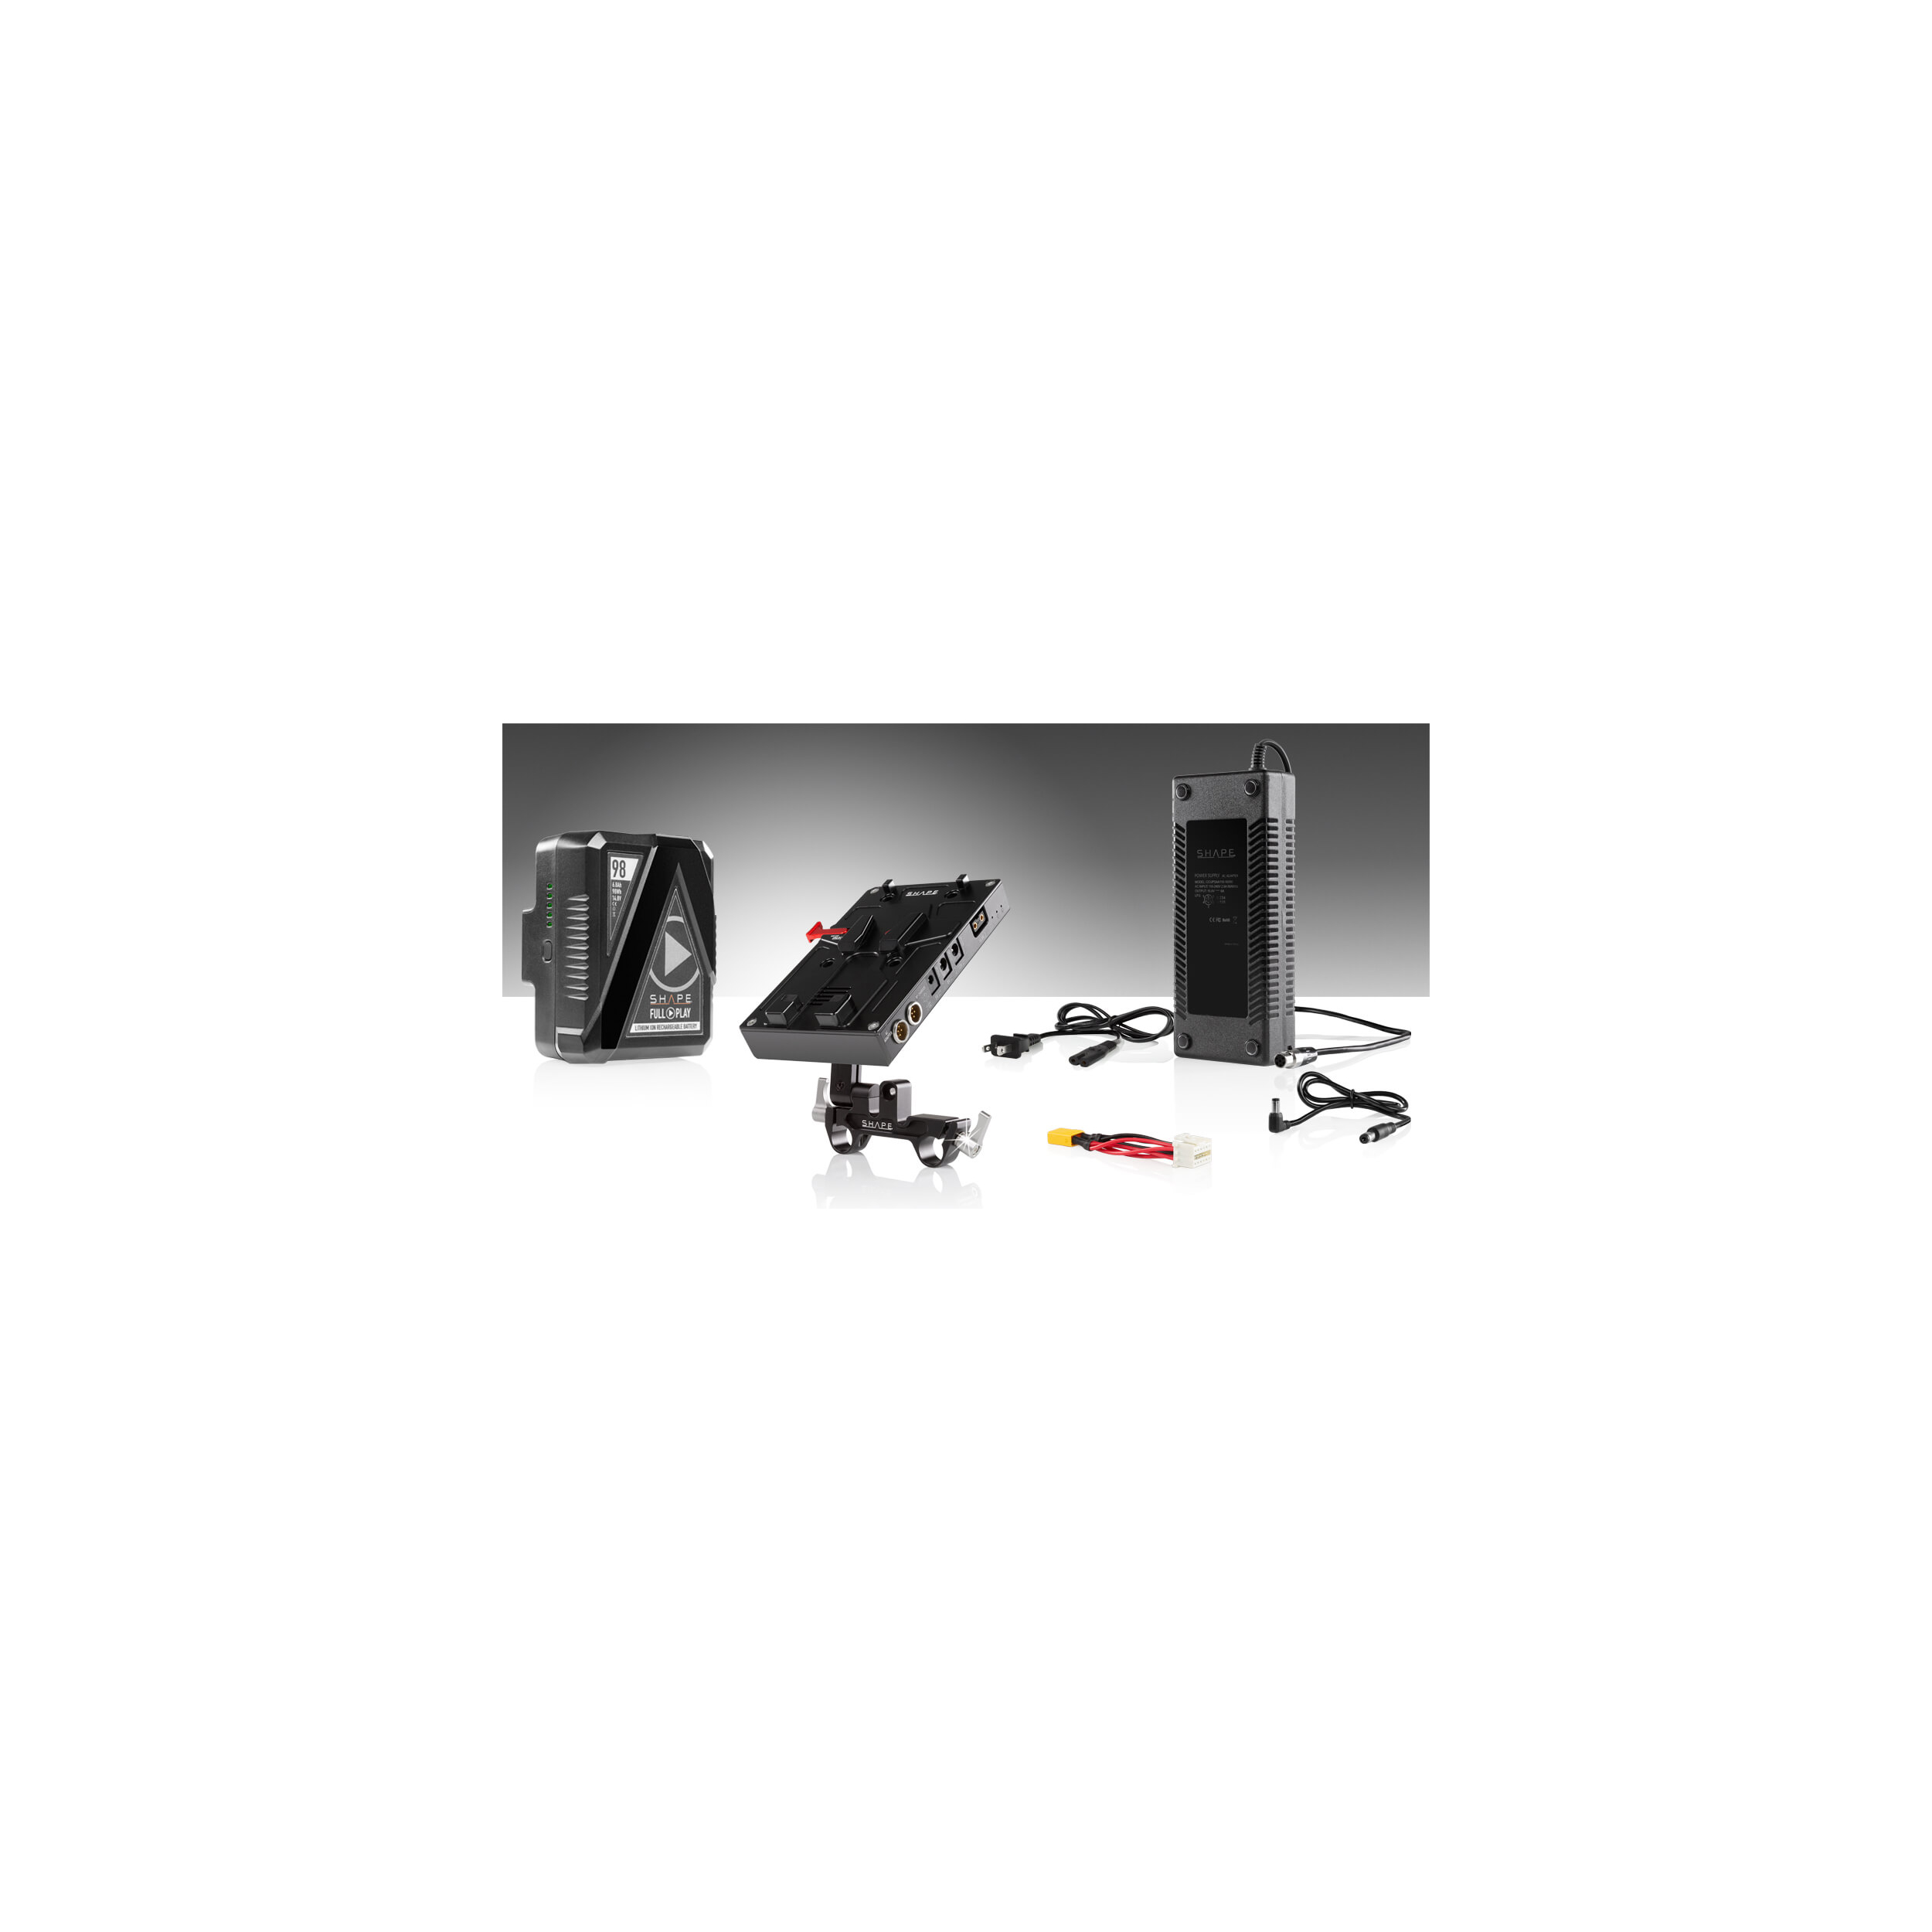 SHAPE J-Box Camera Power & Charger Kit with 98Wh Battery for Blackmagic URSA Mini/Mini Pro